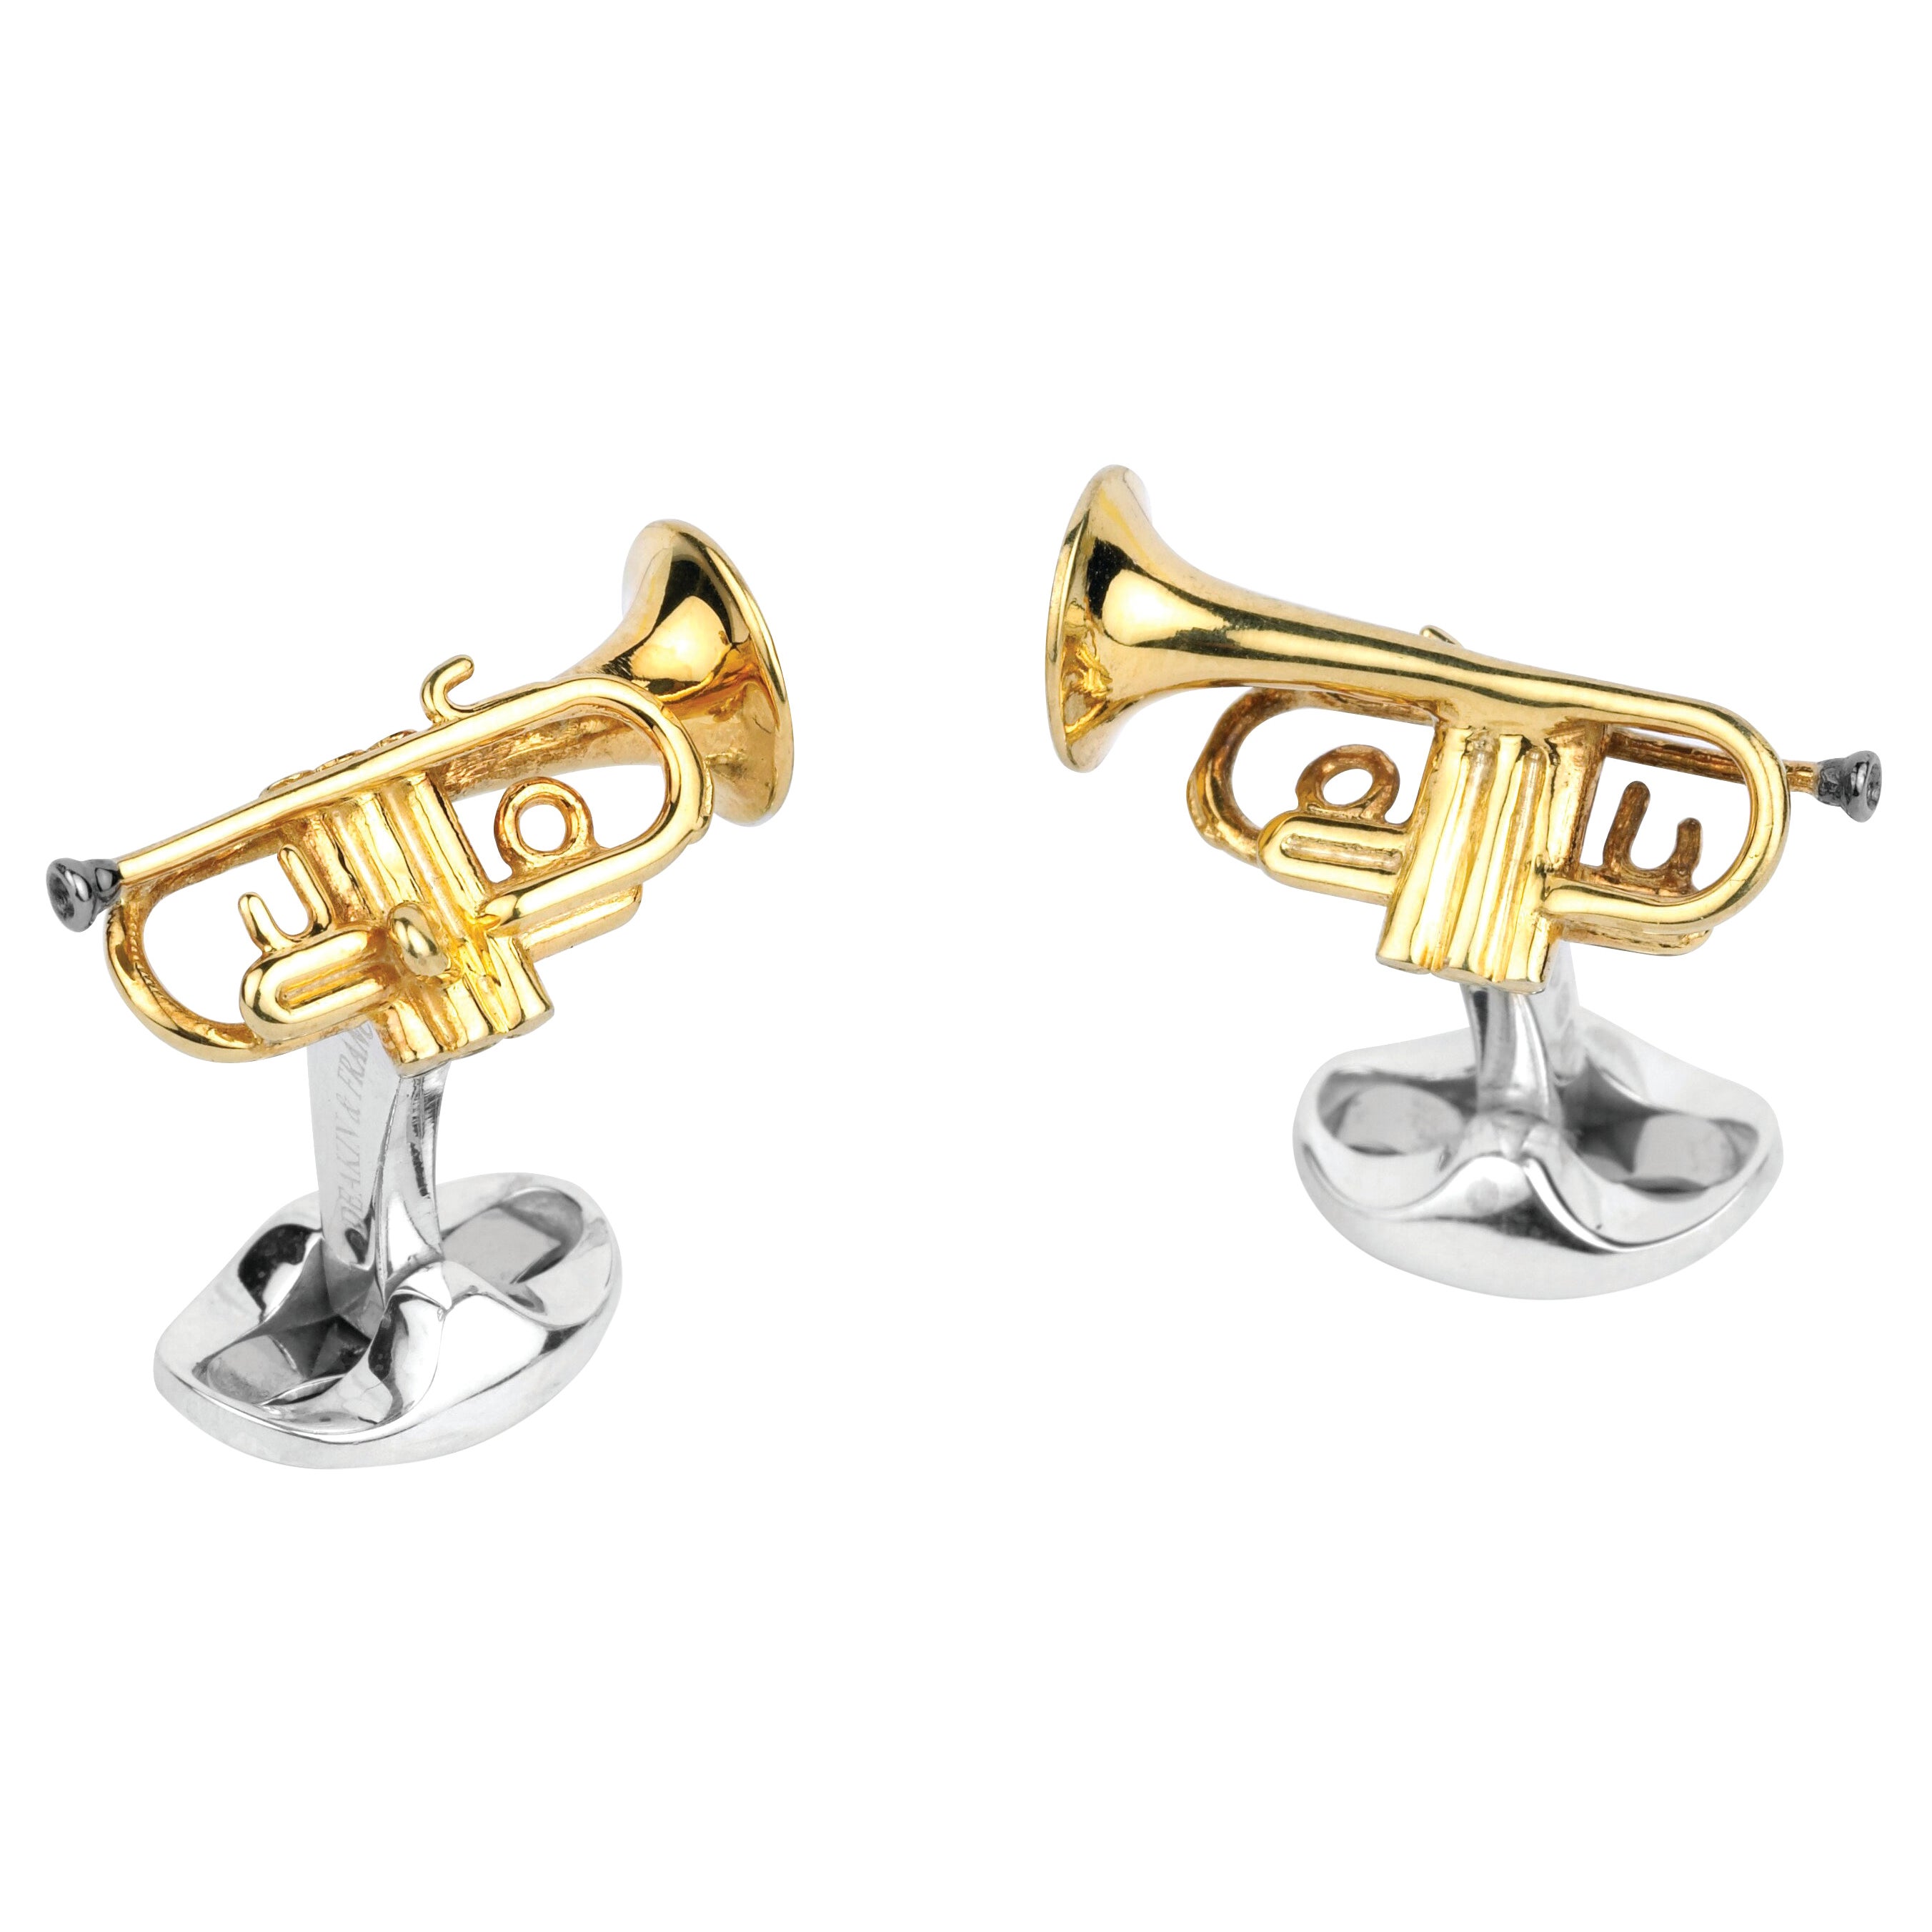 Deakin & Francis Sterling Silver Trumpet Cufflinks